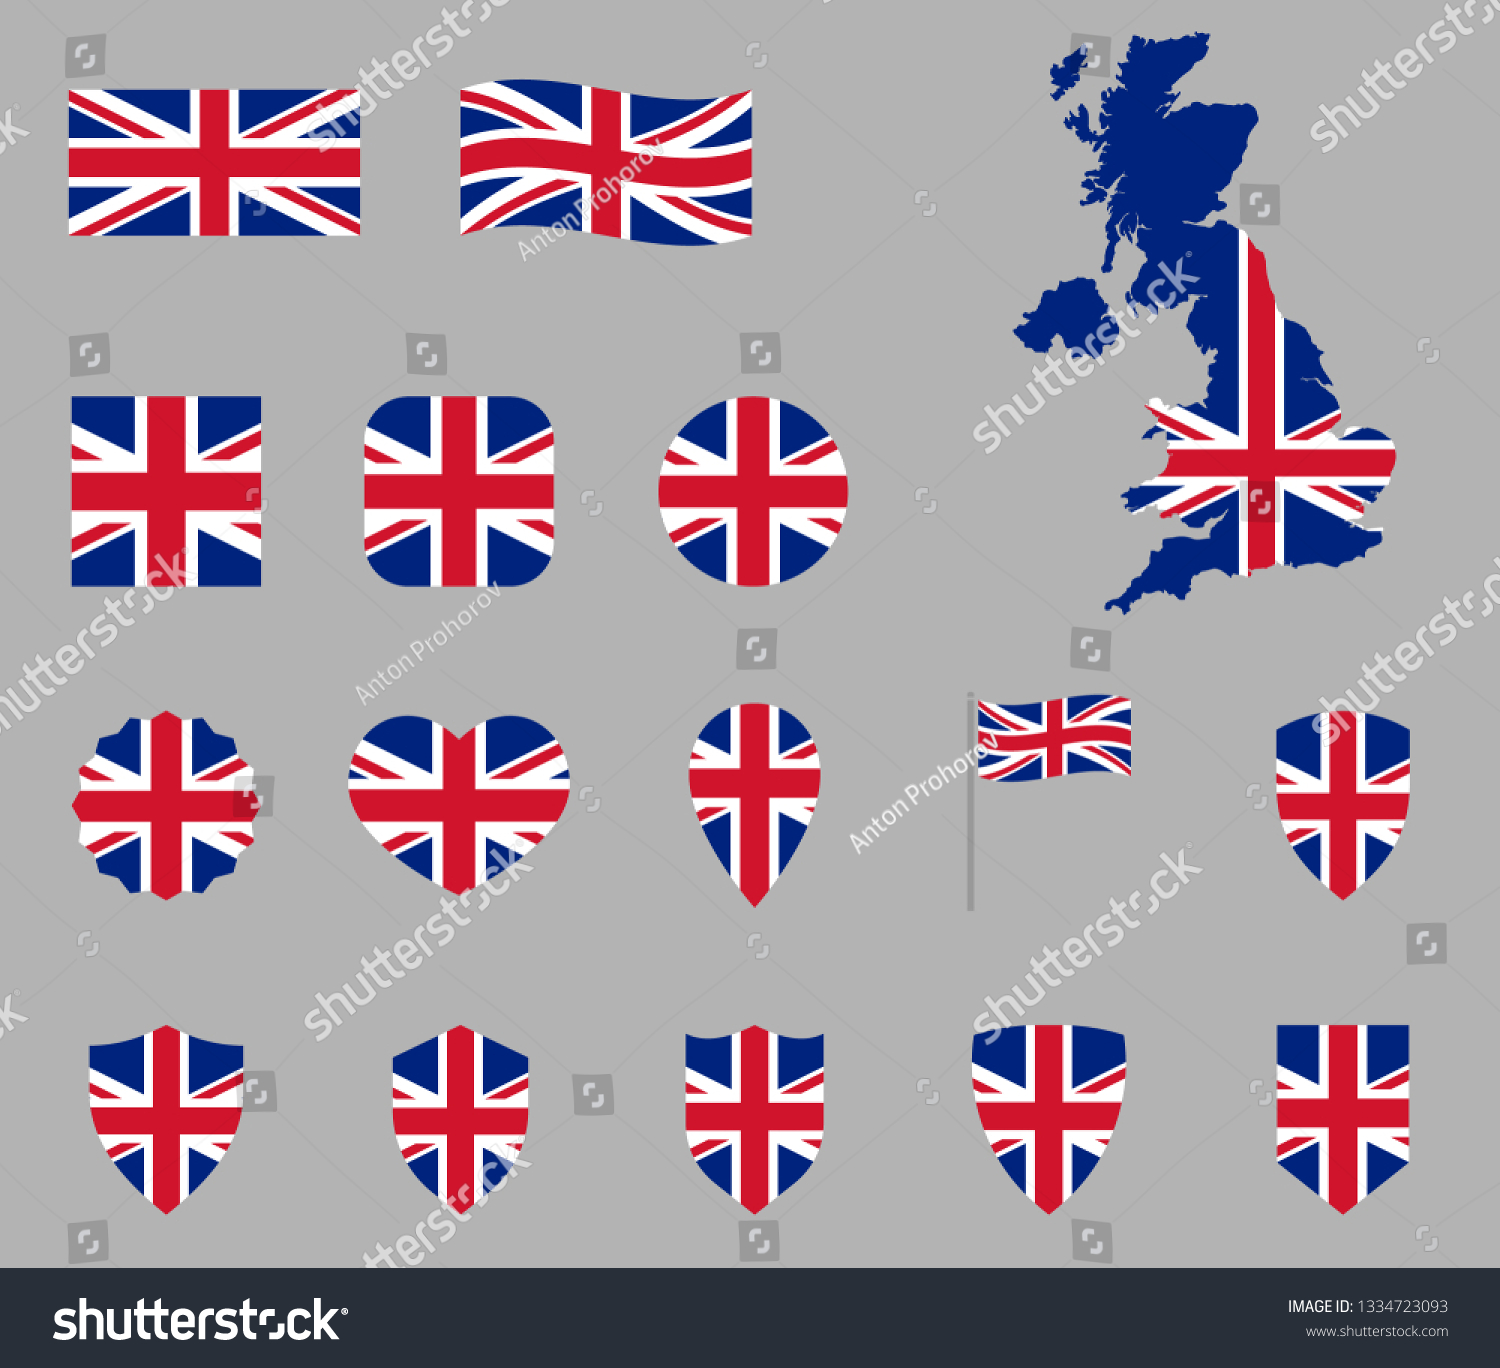 SVG of UK flag icon set, British national flag icons, flag of United Kingdom - Union Jack svg